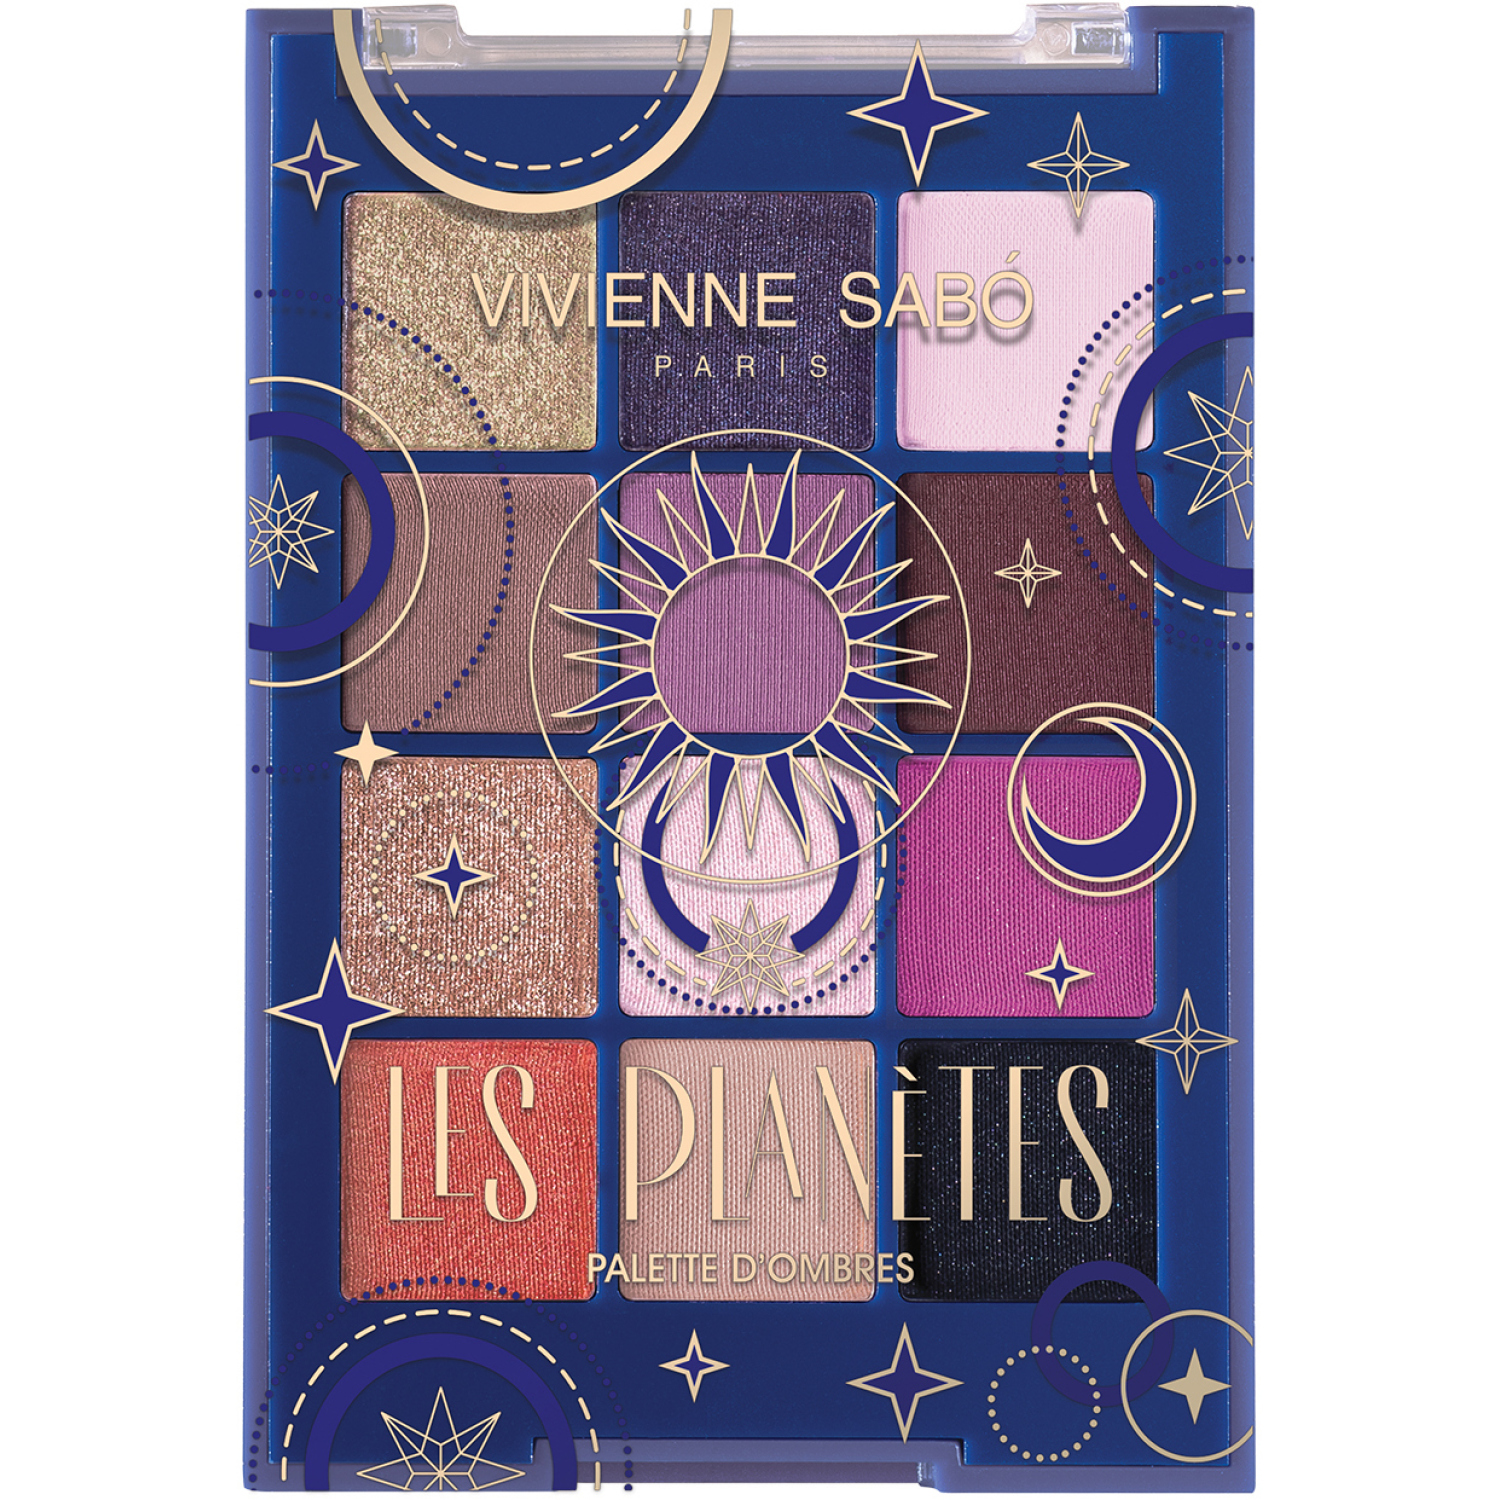 Палетка теней для глаз Vivienne Sabo Les planetes, 12 стойких оттенков в трех текстурах – матовой, сатиновой и сияющей, 9,6гр. - фото 1